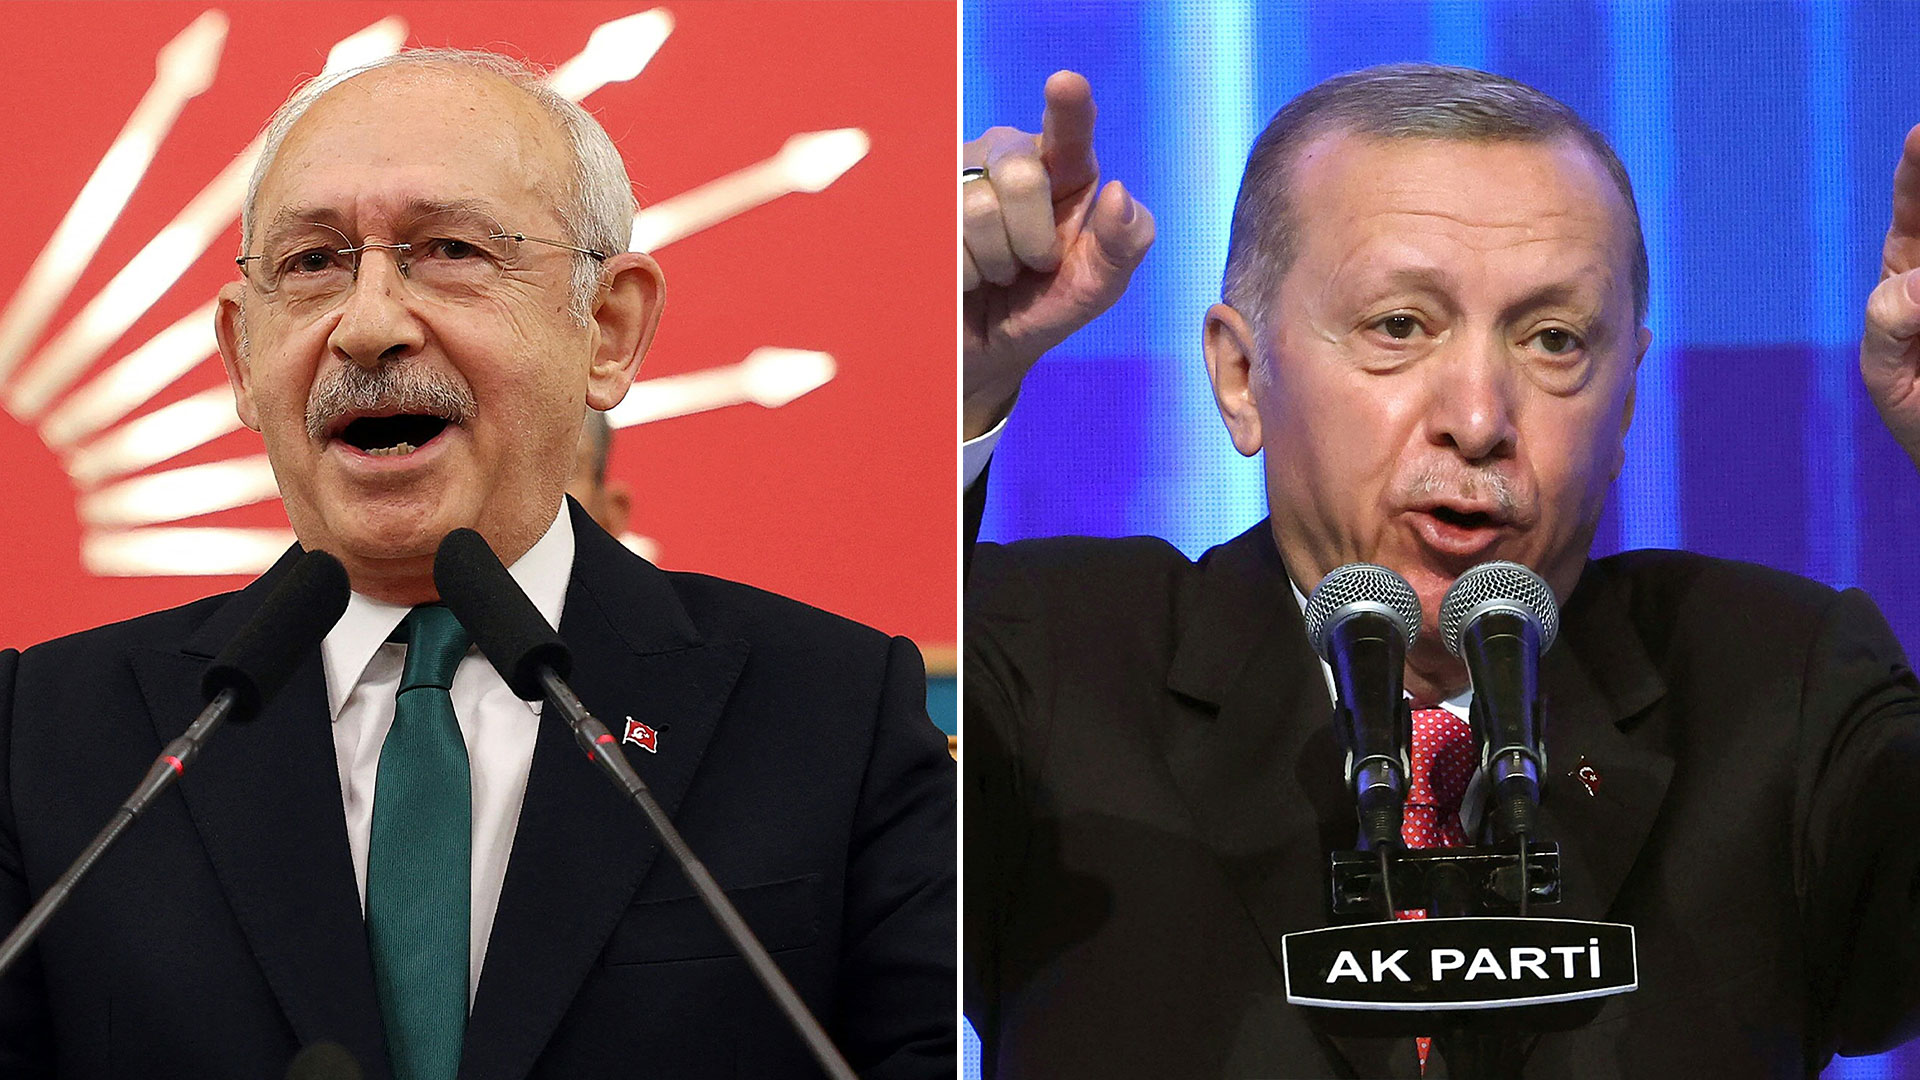 Erdogan y Kiliçdaroglu se enfrentarán en la segunda vuelta electoral que definirá al próximo presidente de Turquía